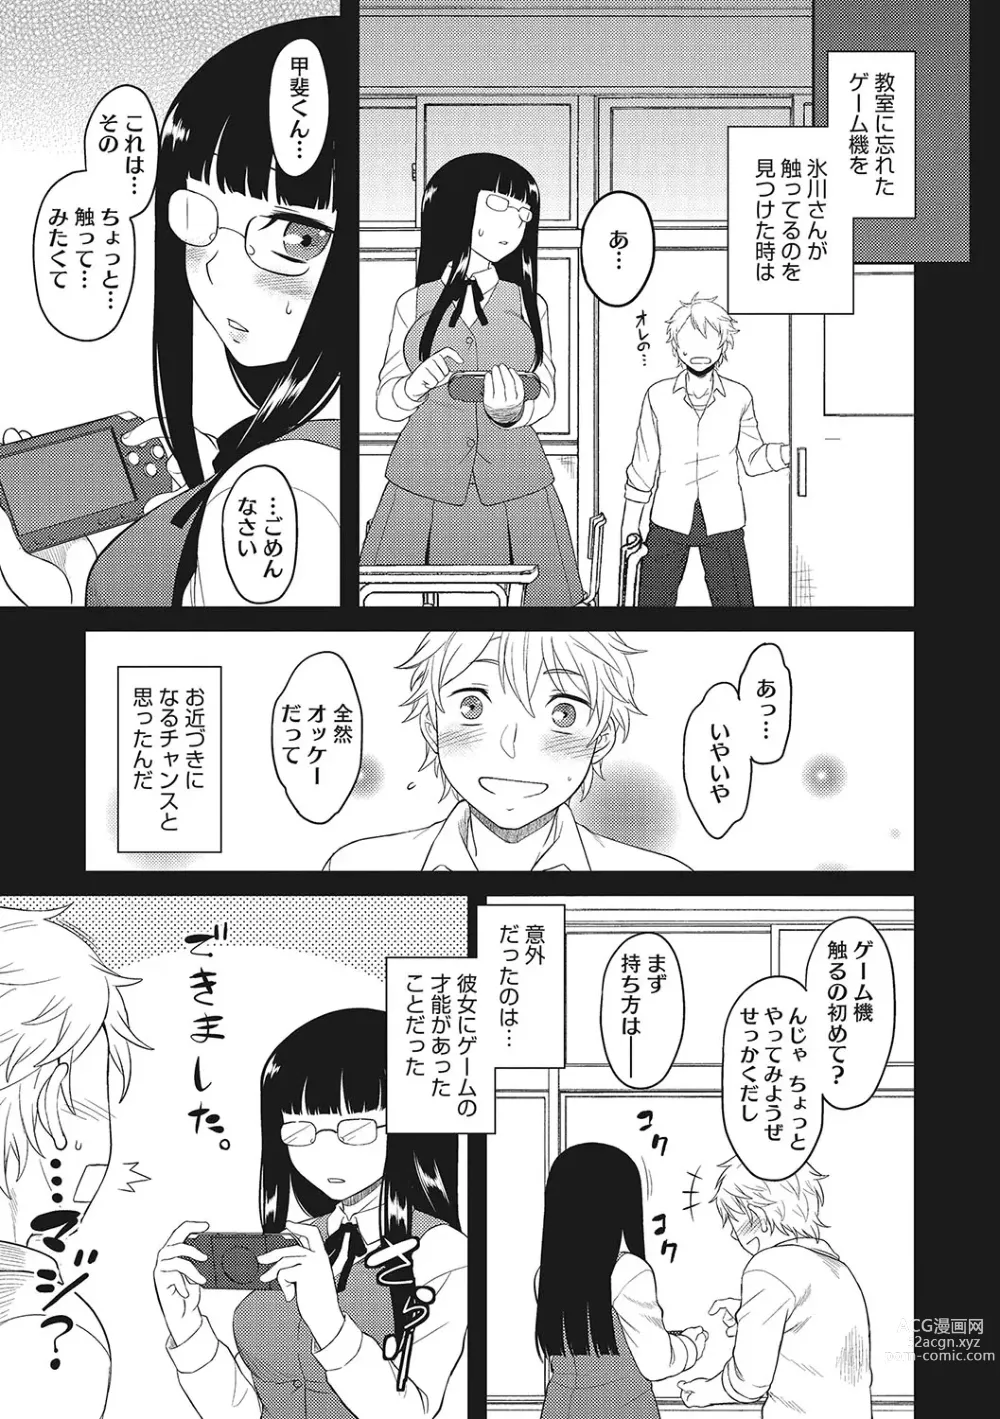 Page 6 of manga Yuuwaku Angle